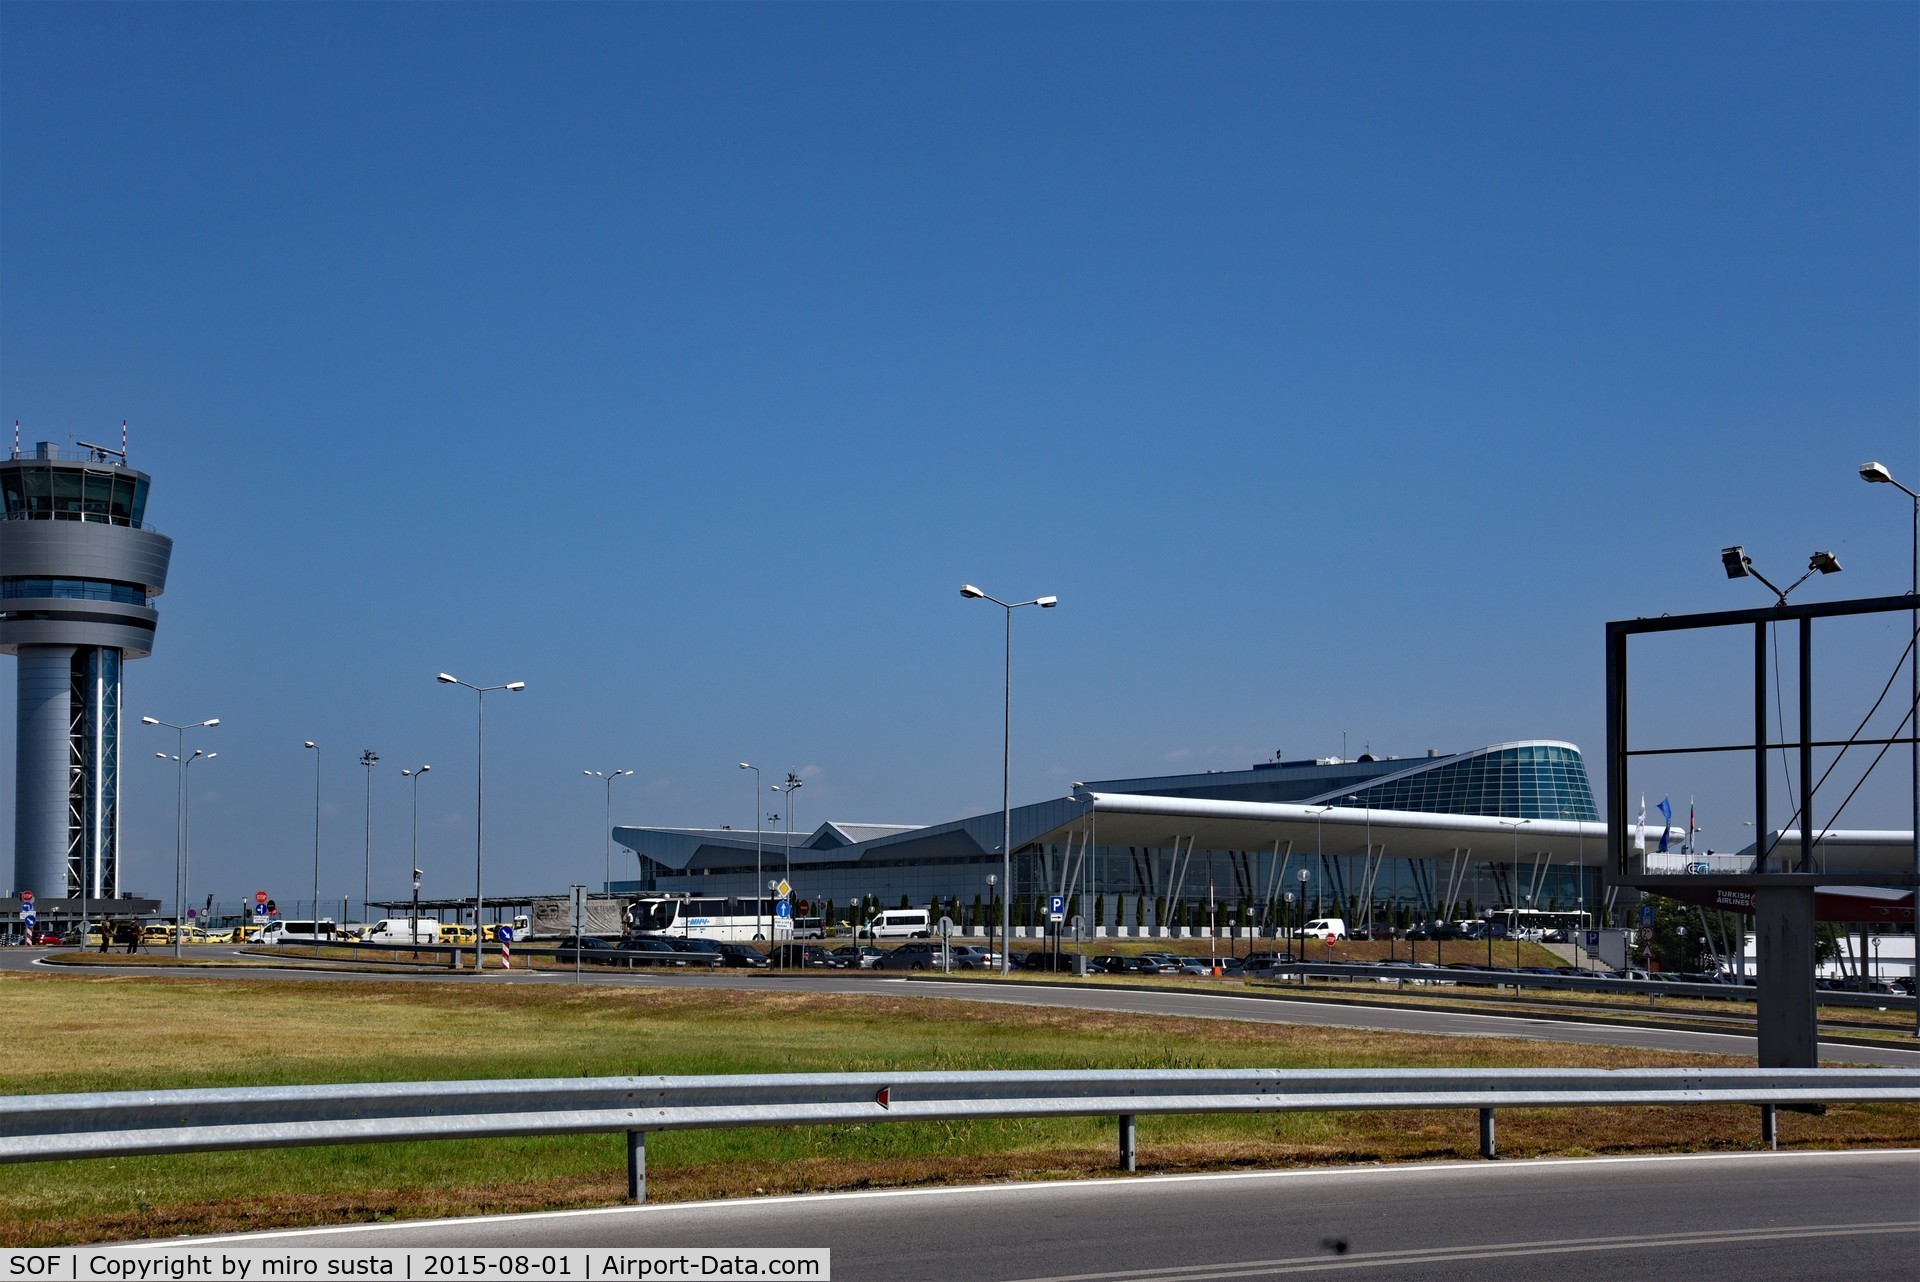 Sofia International Airport (Vrazhdebna), Sofia Bulgaria (SOF) - Sofia International Airport, Bulgaria